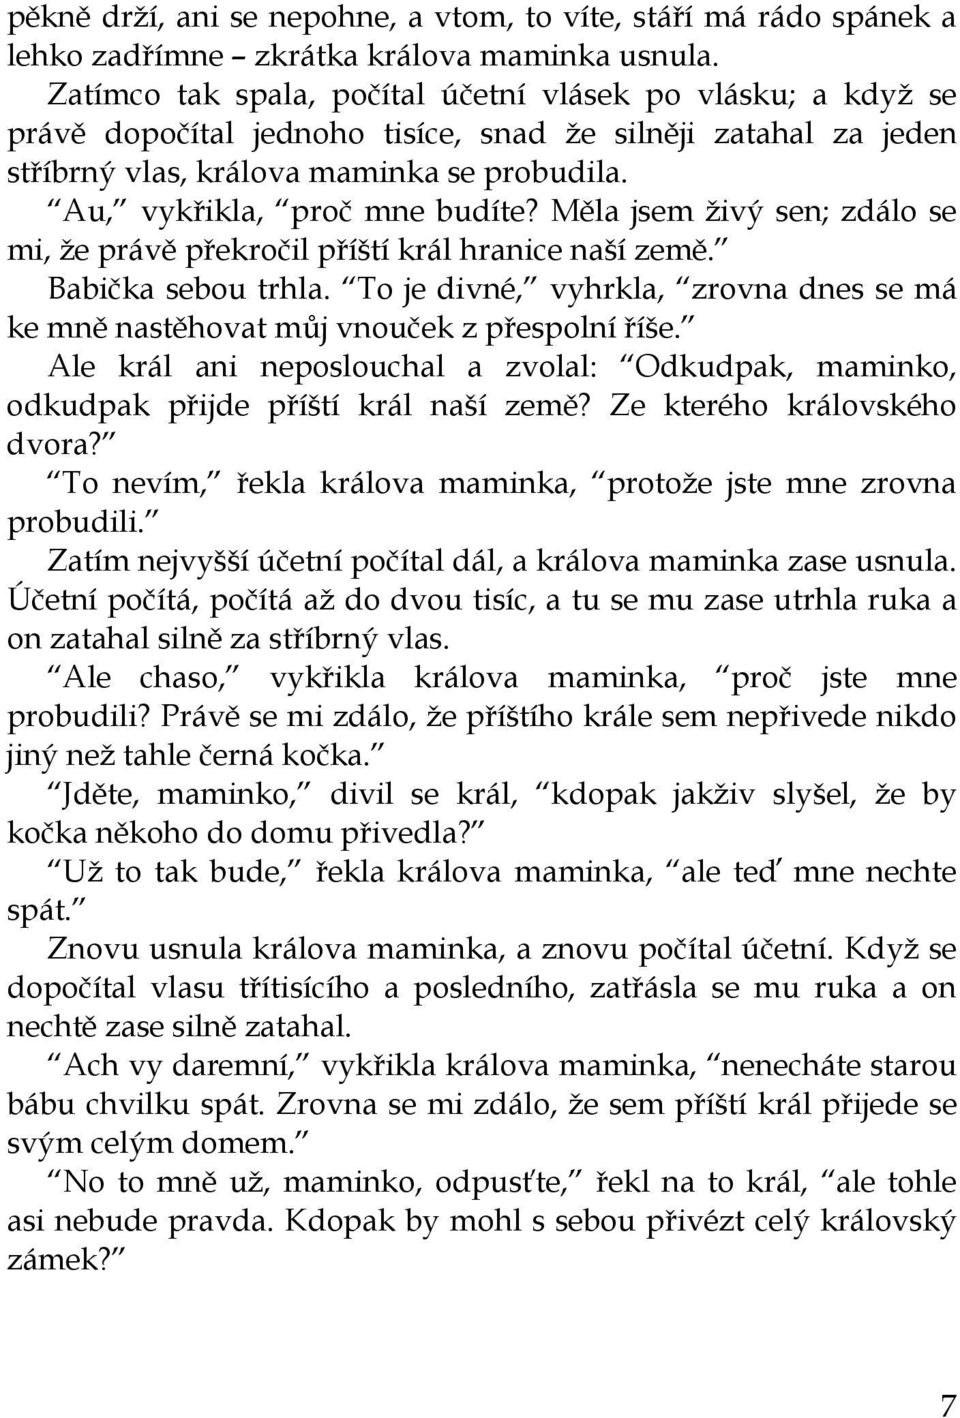 Karel Čapek DEVATERO POHÁDEK - PDF Stažení zdarma